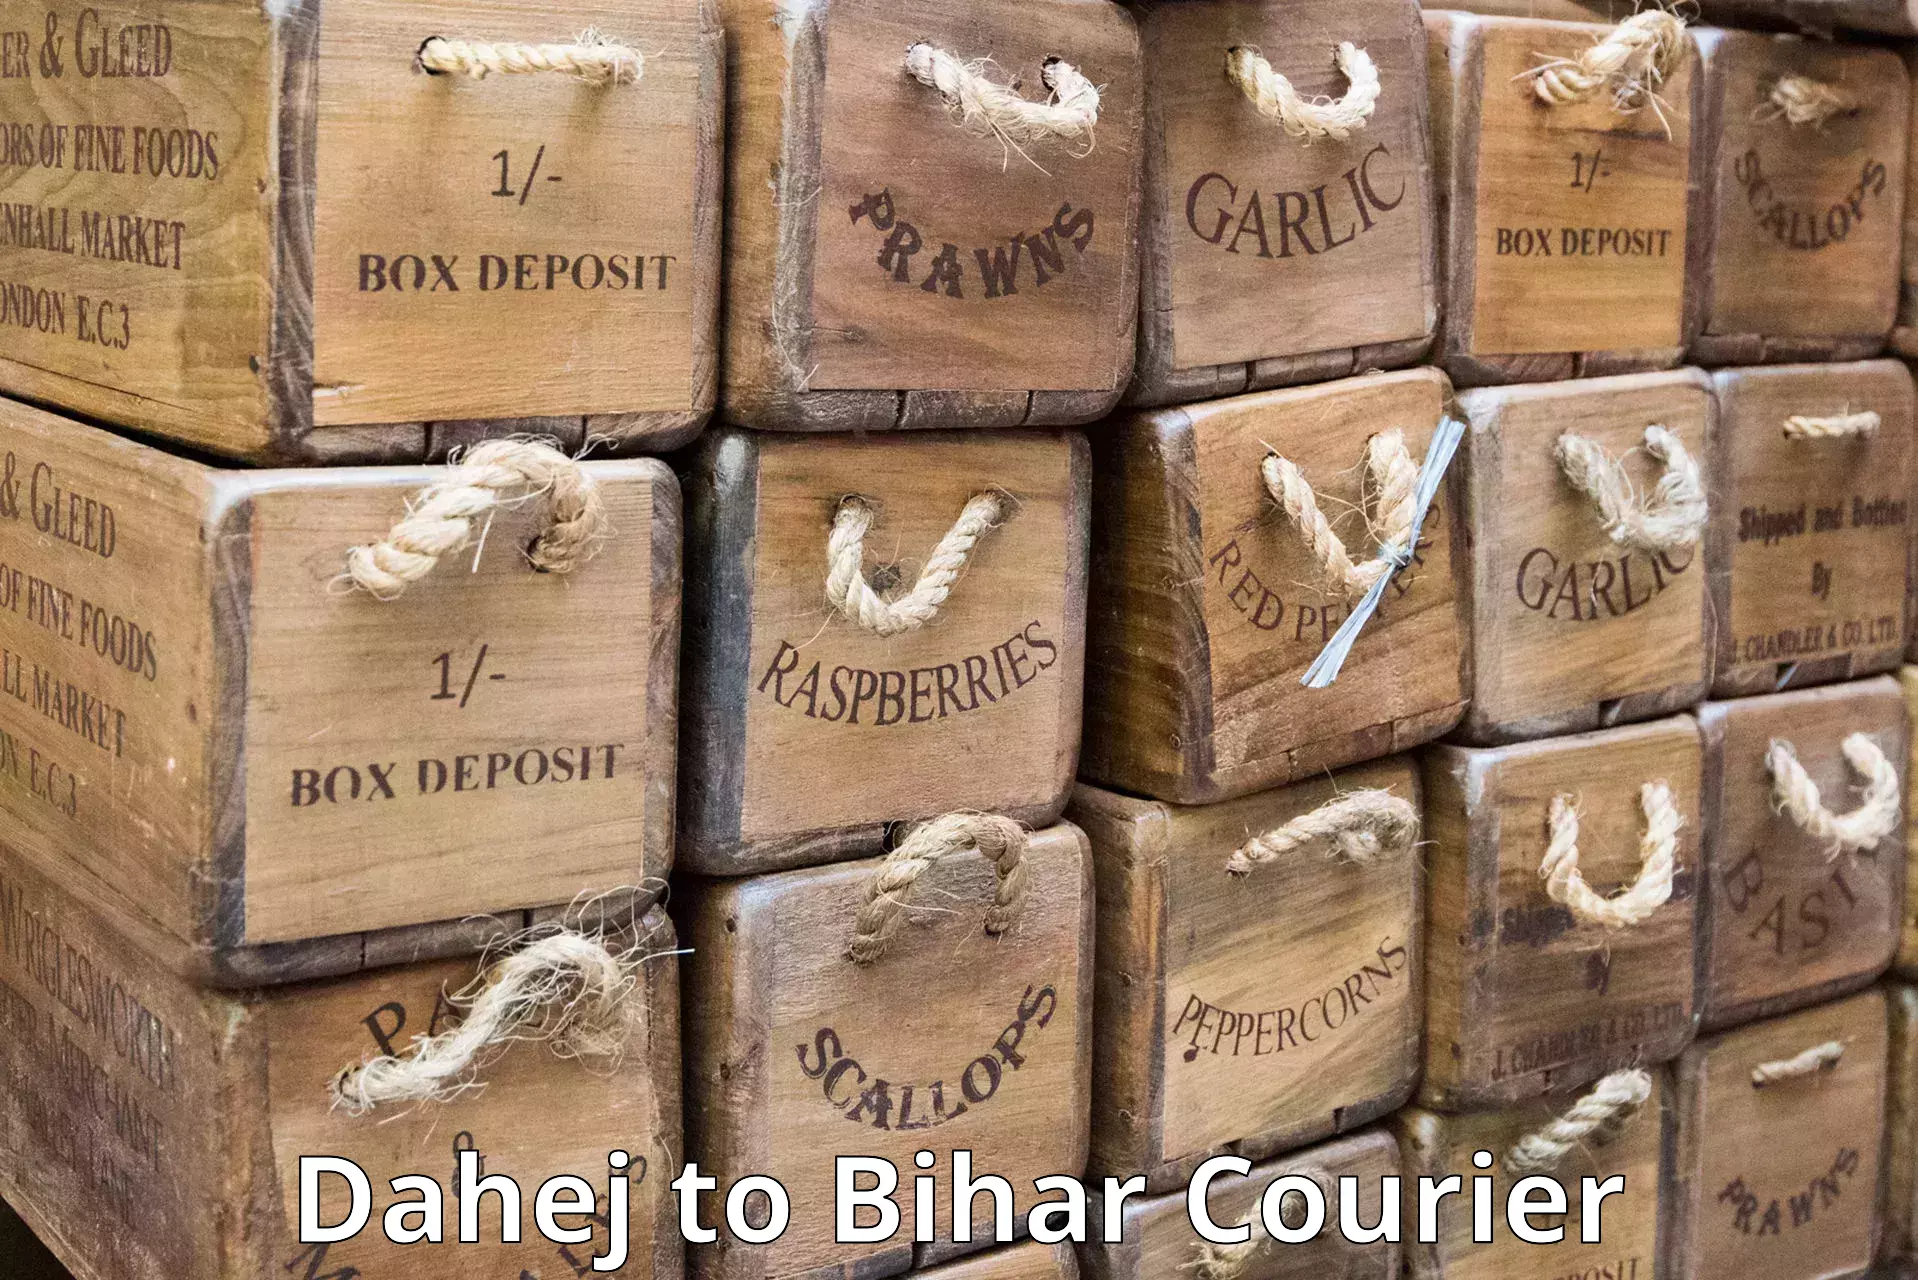 Next day courier Dahej to Bihar